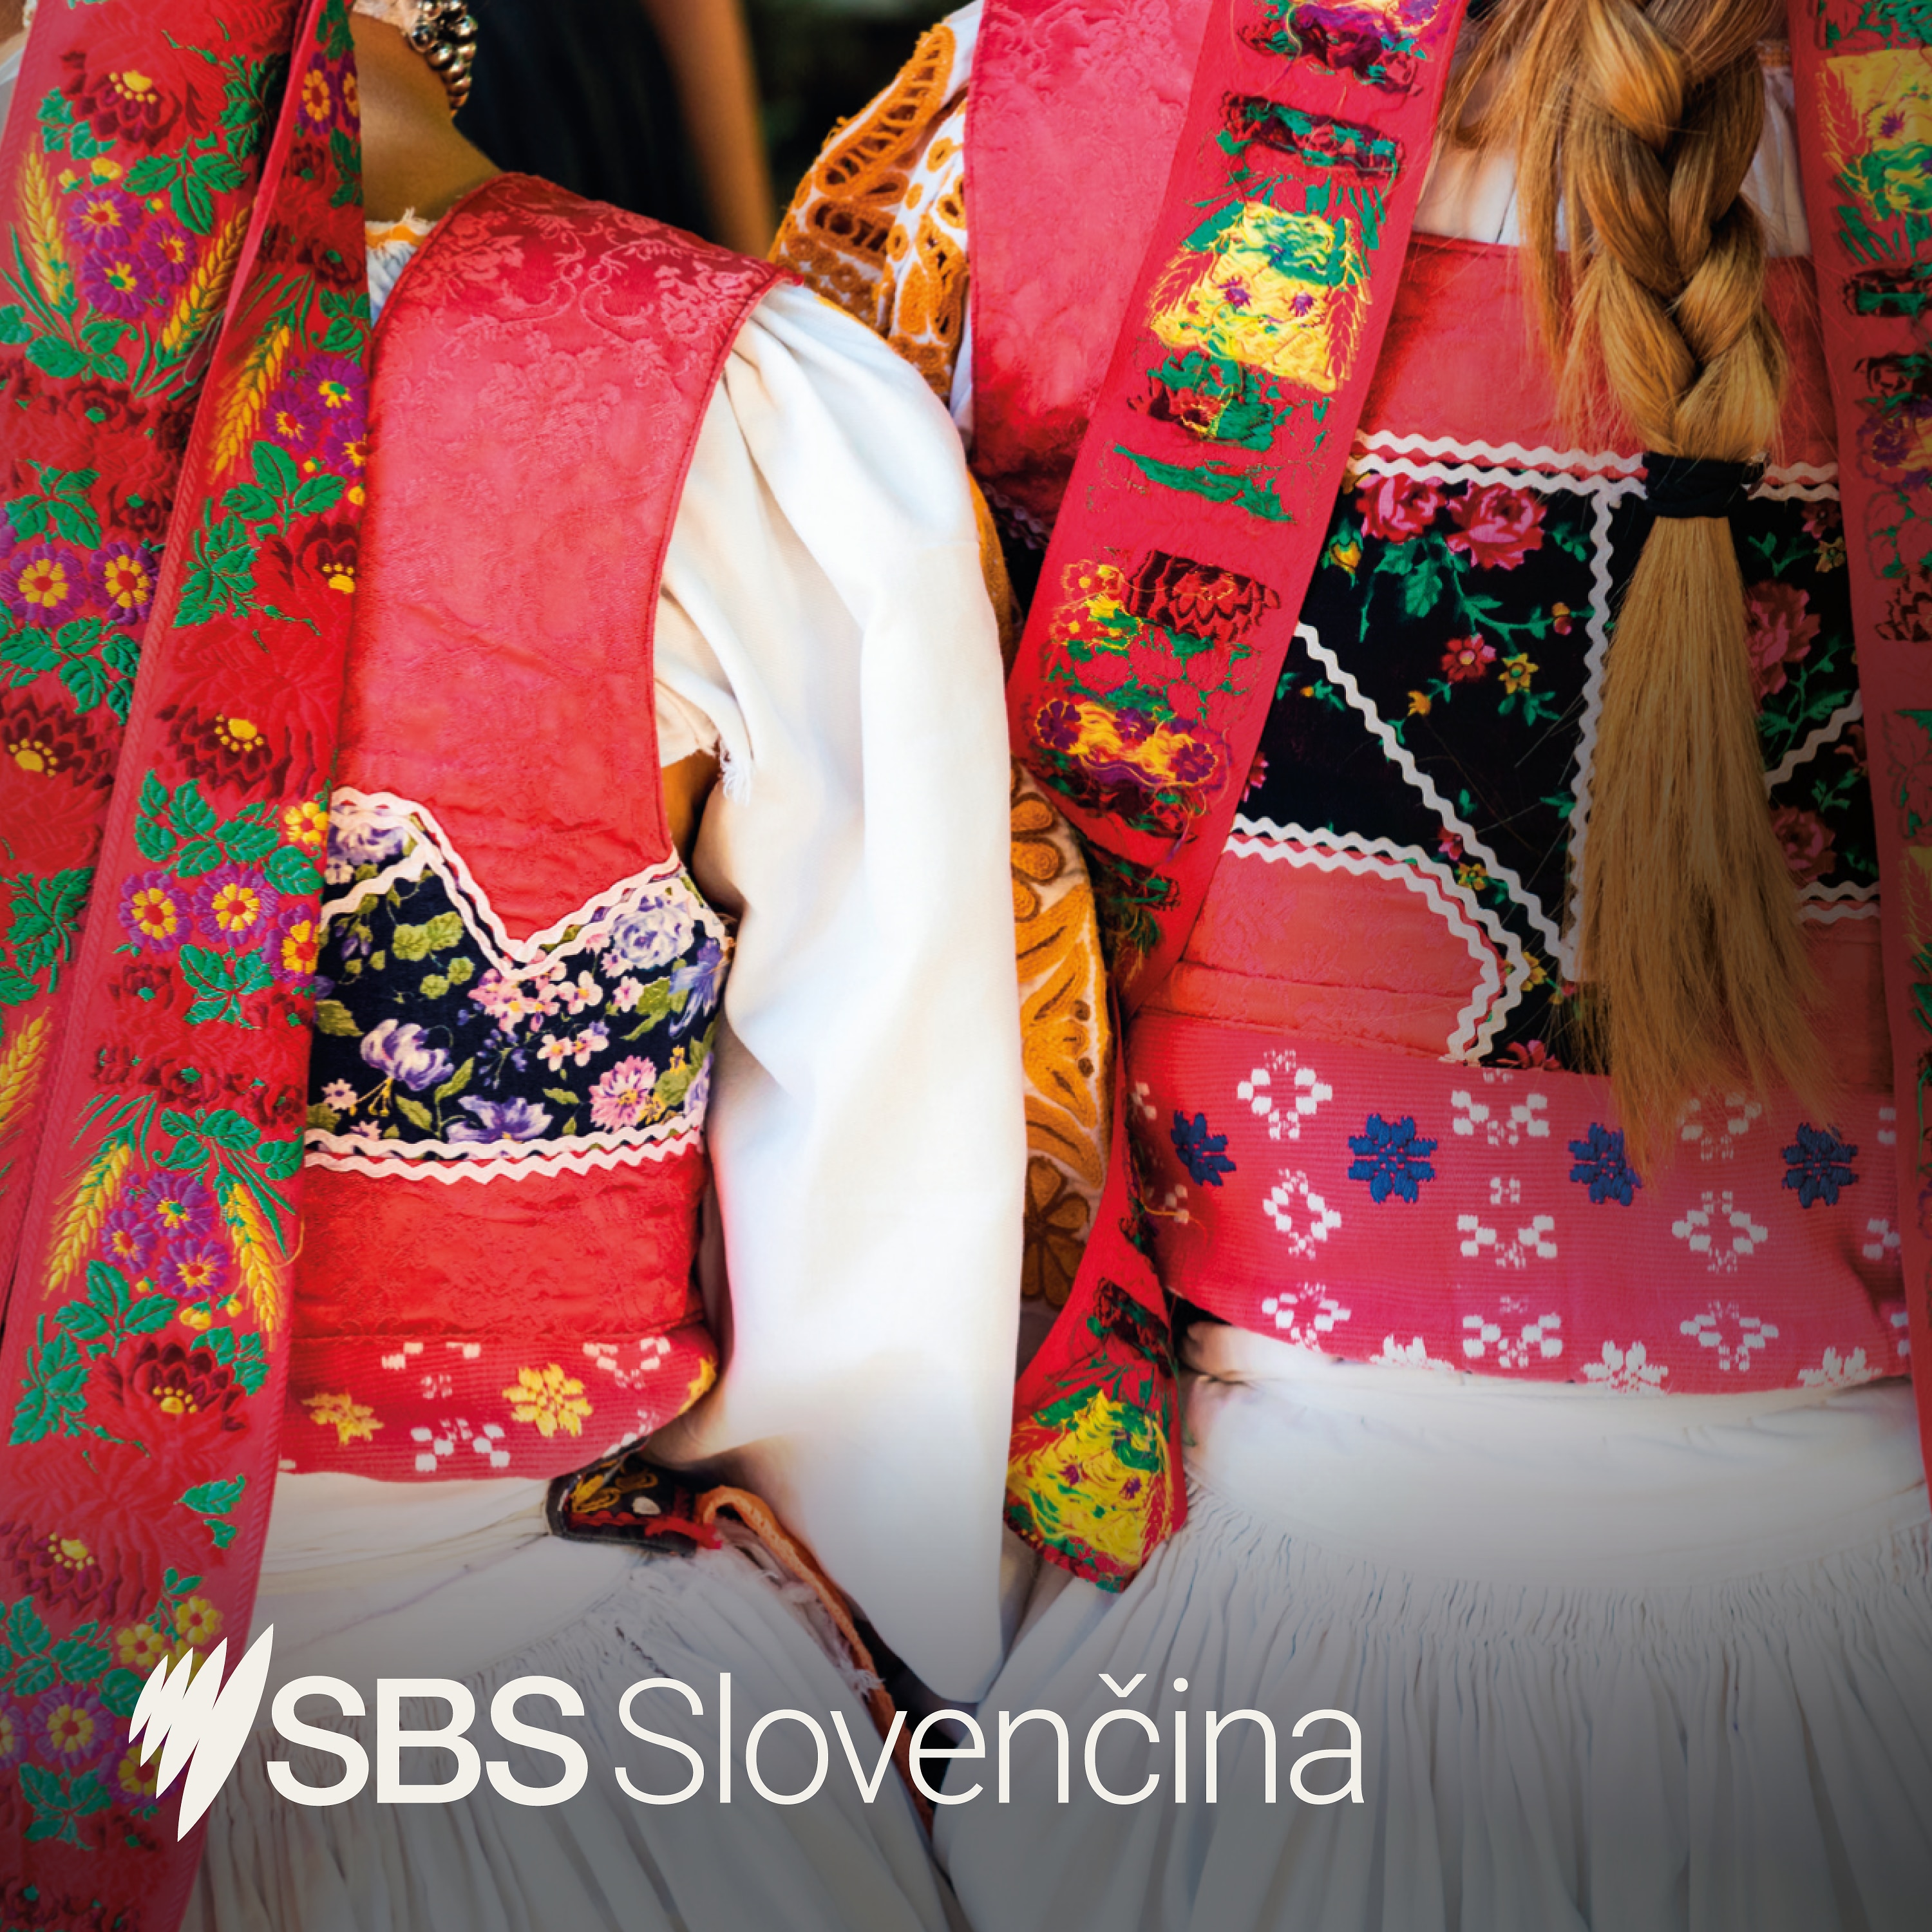 SBS Slovak news from 13th December 2020 - Správy SBS v slovenčine 13. decembra 2020